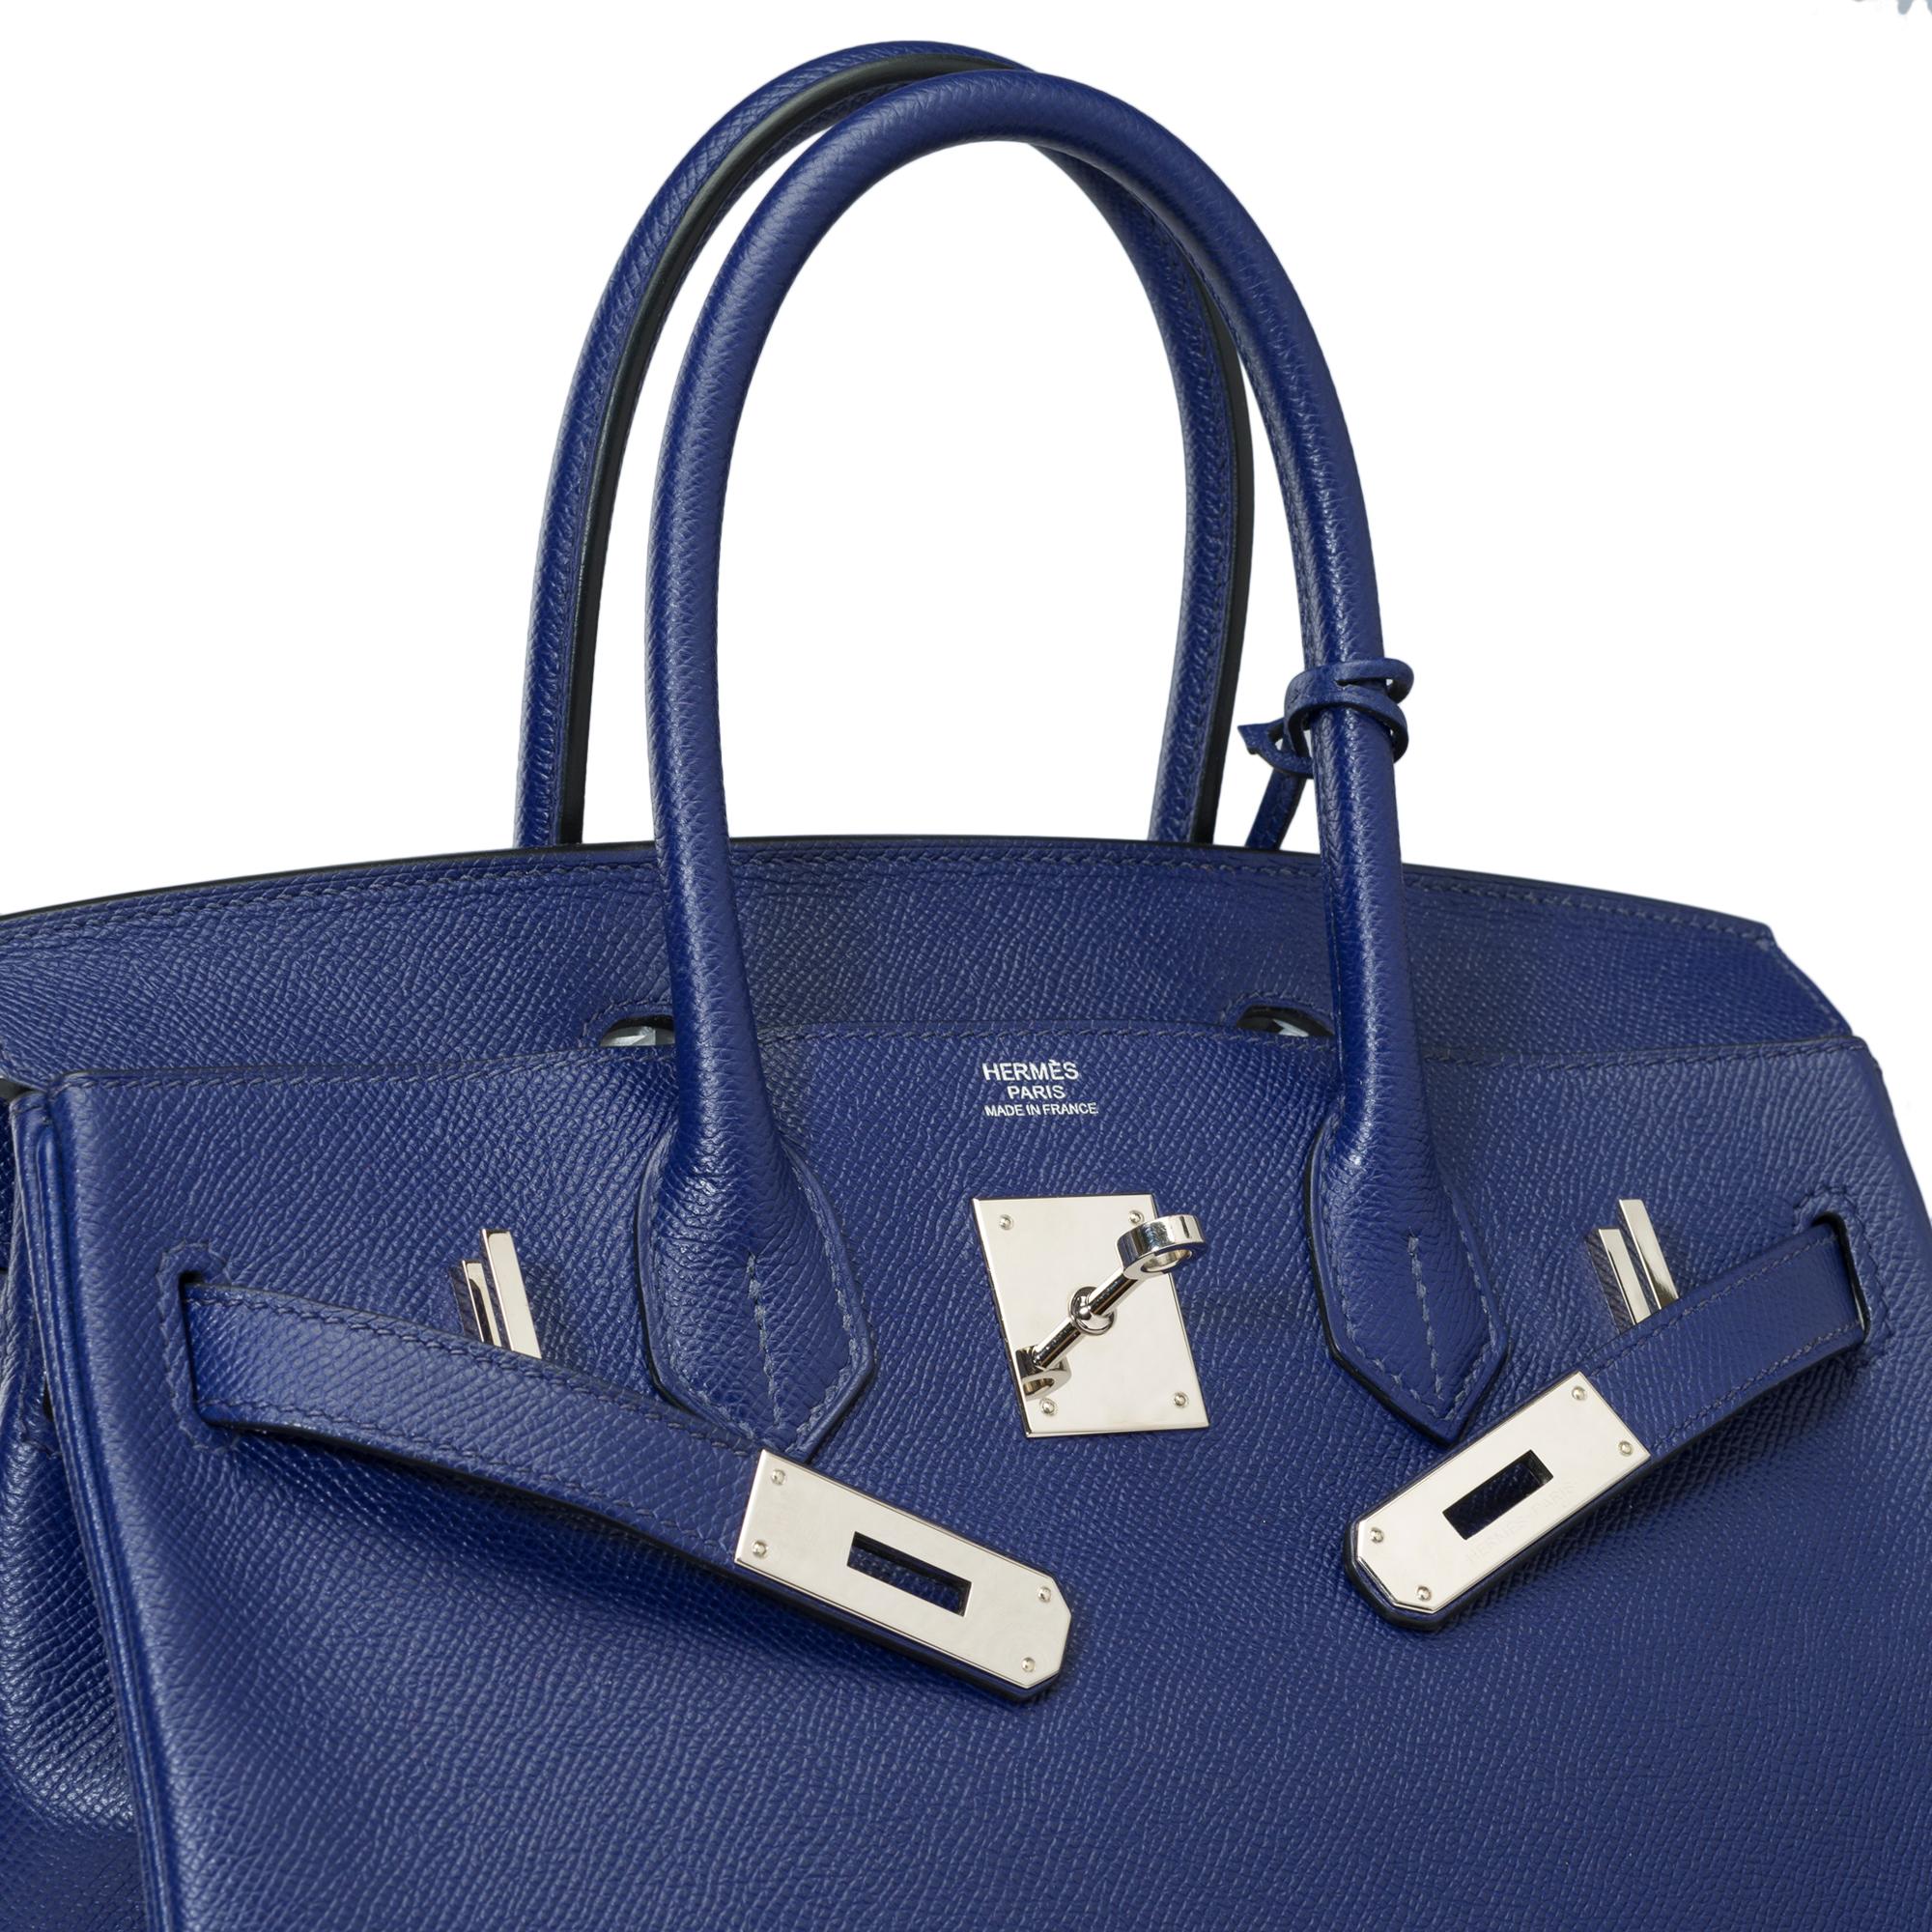 Stunning Hermes Birkin 30 handbag in Blue Sapphire Epsom leather, SHW For Sale 2